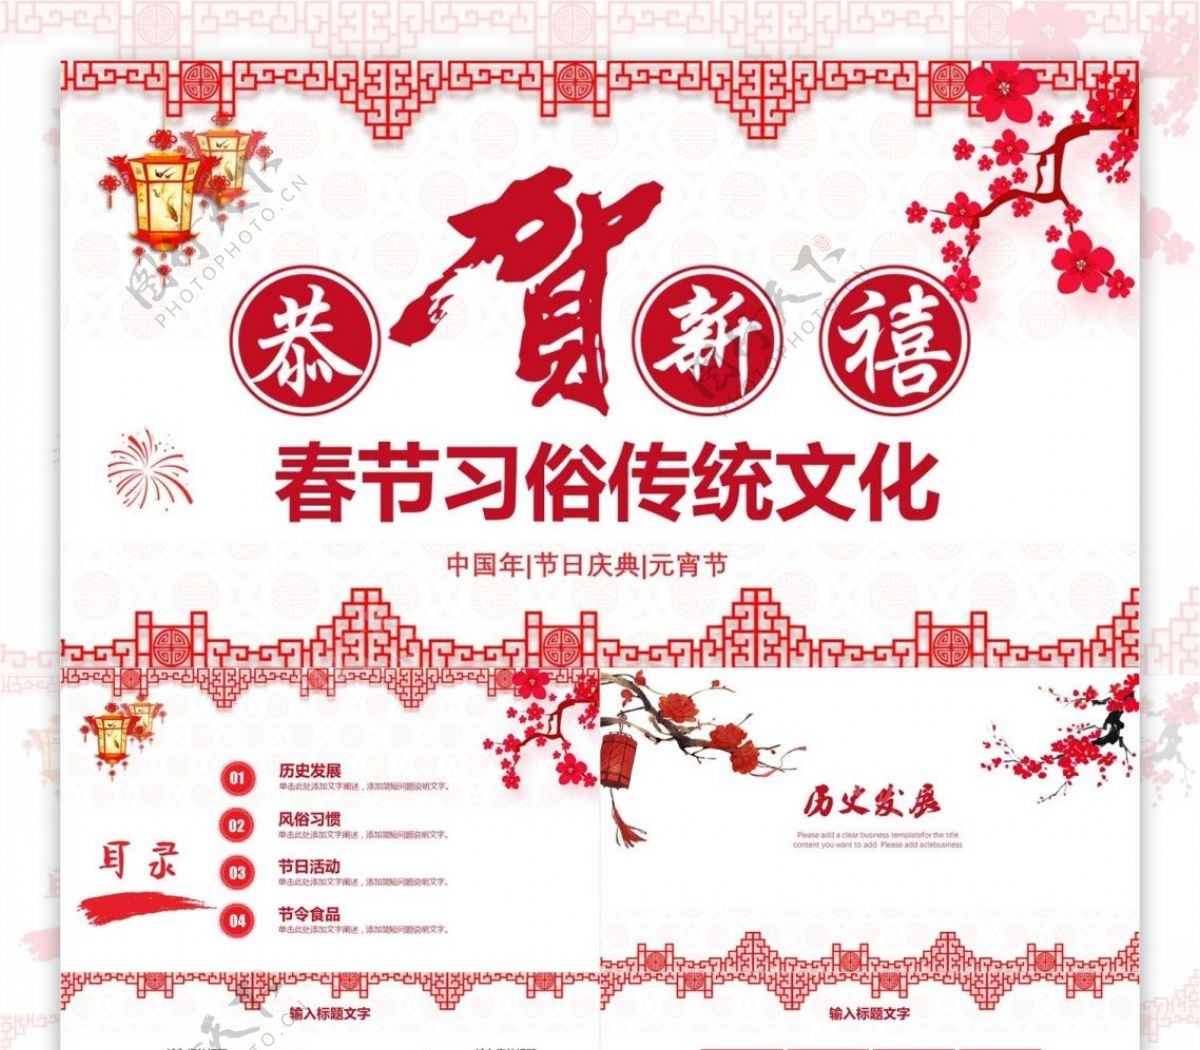 创意春节习俗传统文化节日庆典PPT模板